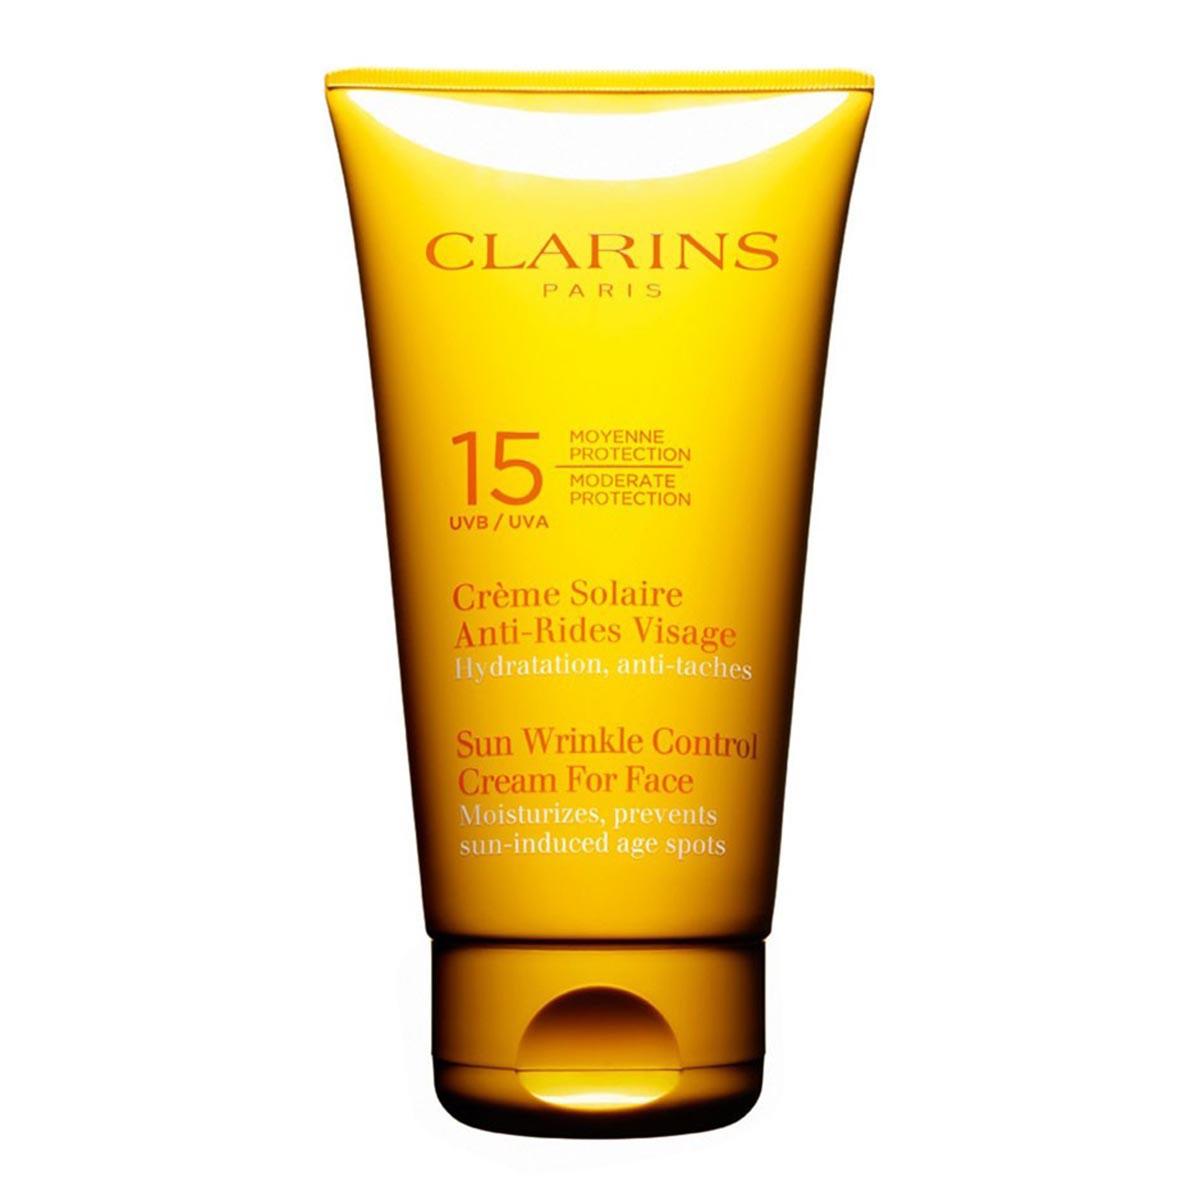 clarins-creme-solaire-antirides-visage-spf15-75ml